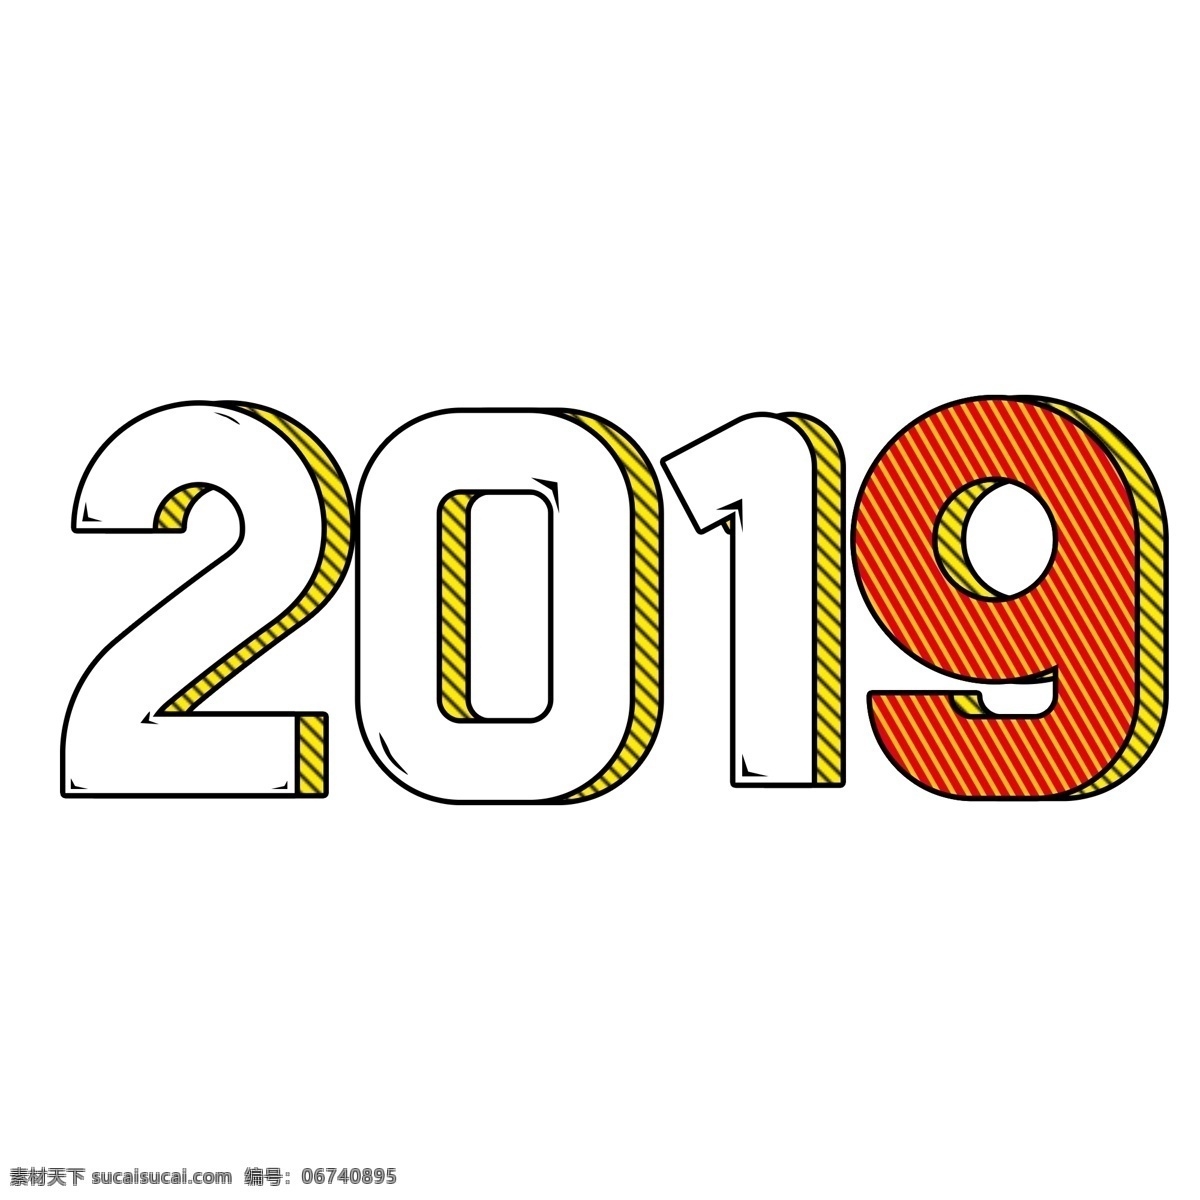 流行 风 图案 条纹 2019 年 红色 黄色 新年 节日 一年的猪 主题词 海报 文本 字体 颜色 数字